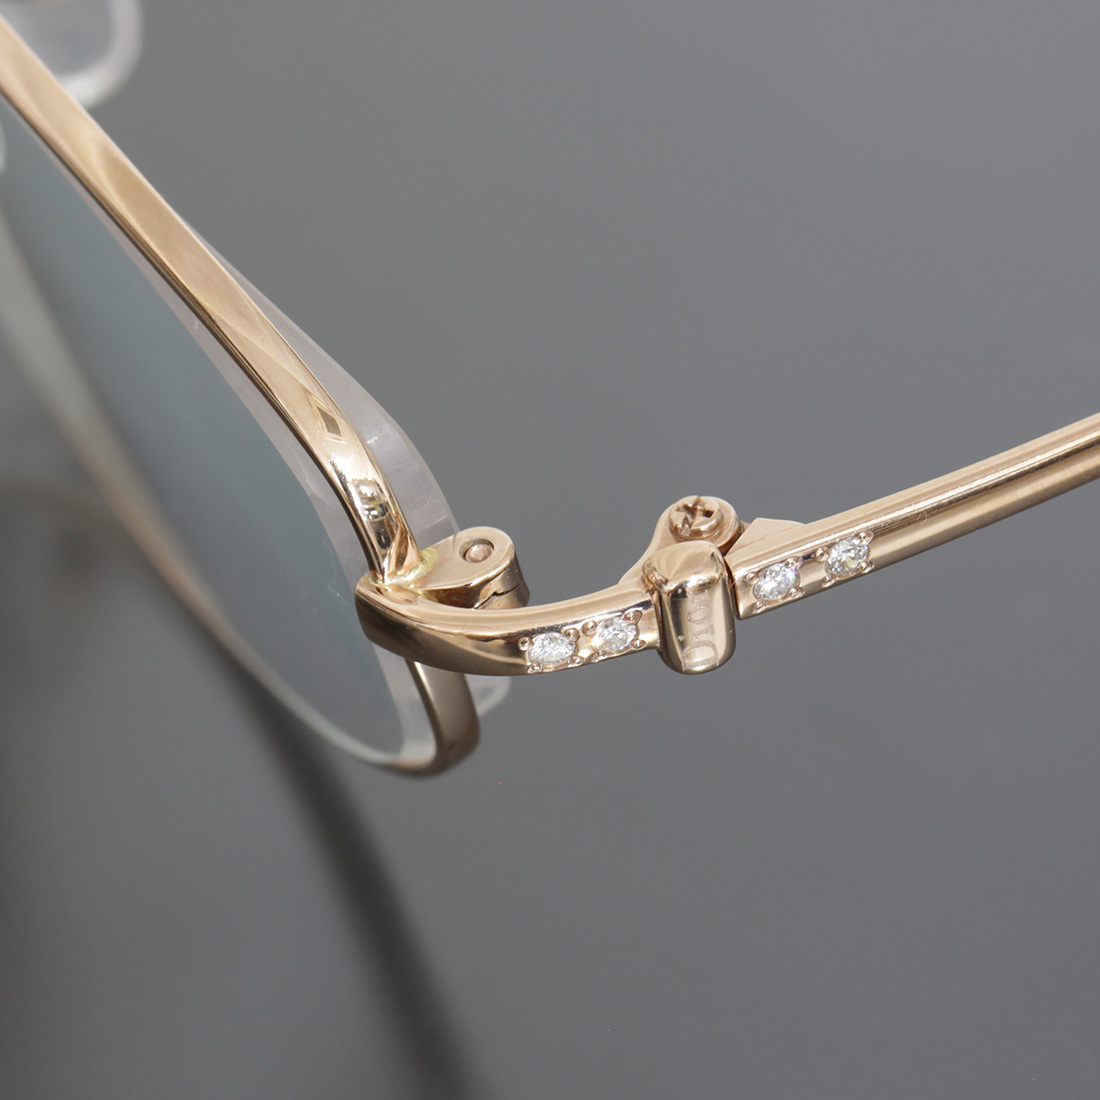 クリスチャンディオール 金無垢 ダイヤ 眼鏡 メガネ K18PG ピンクゴールド Dior E0456_画像5